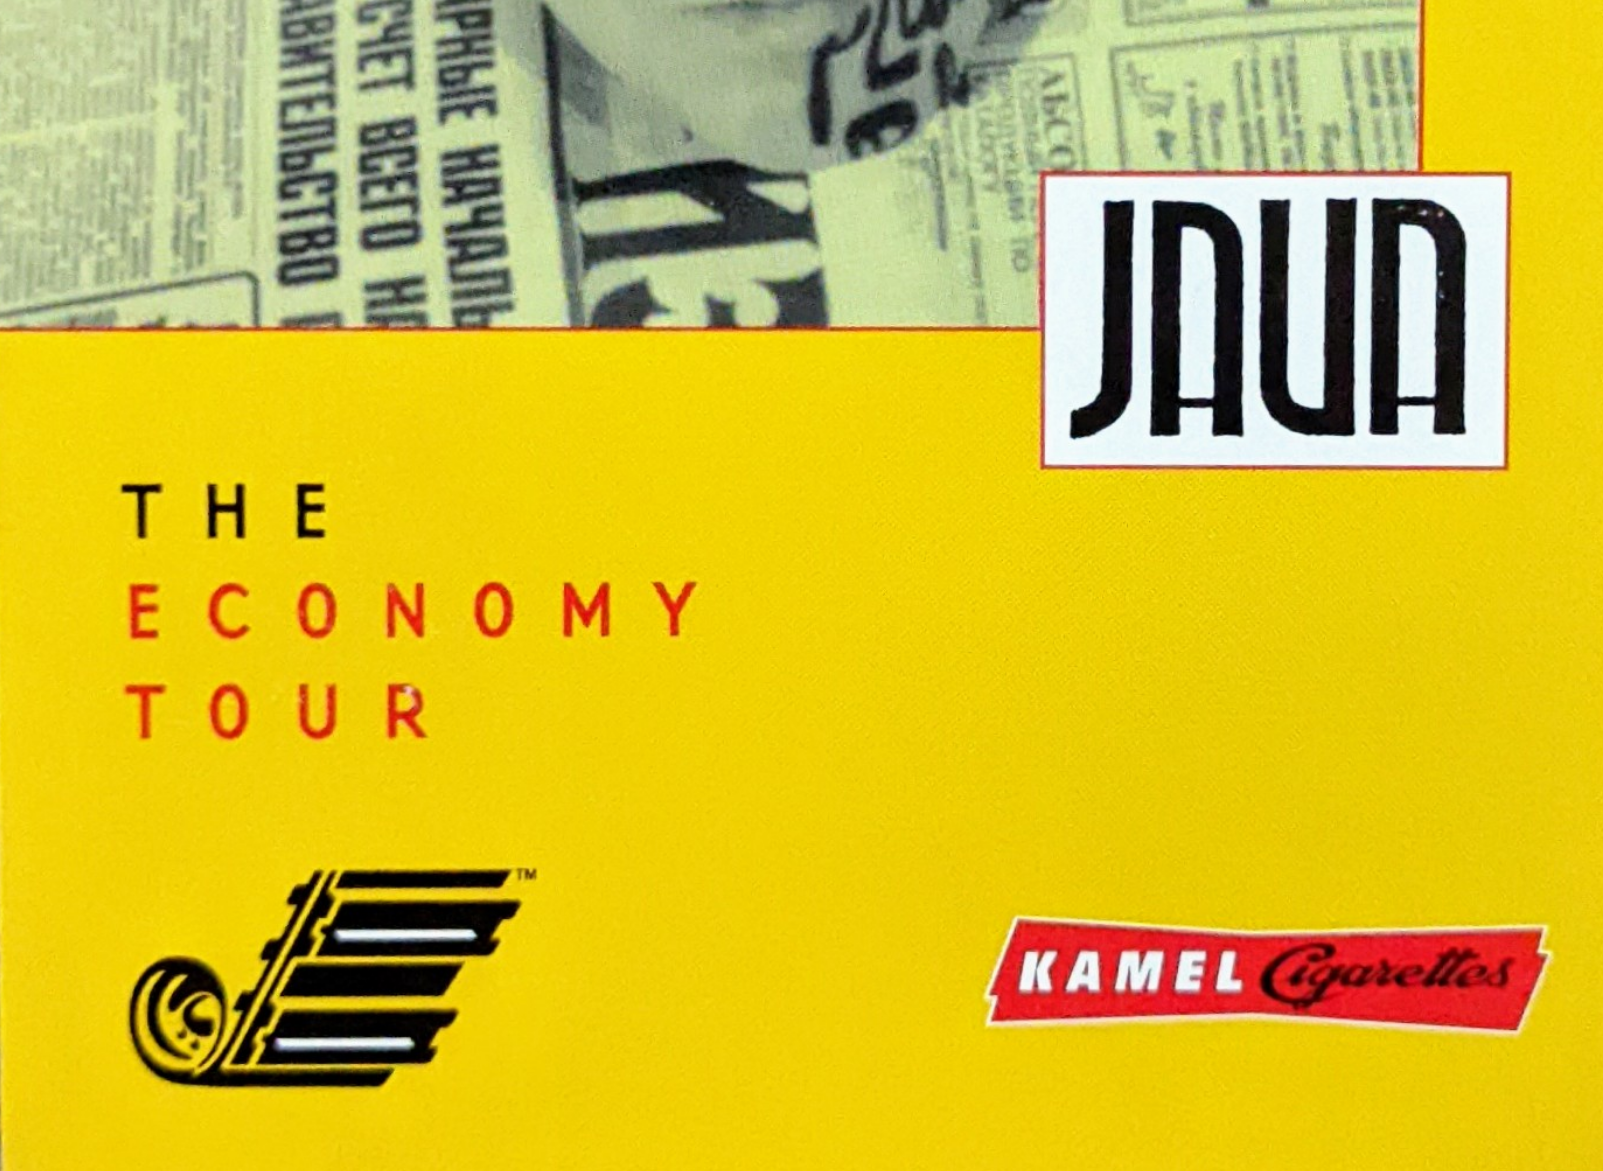 1997: The Economy Tour